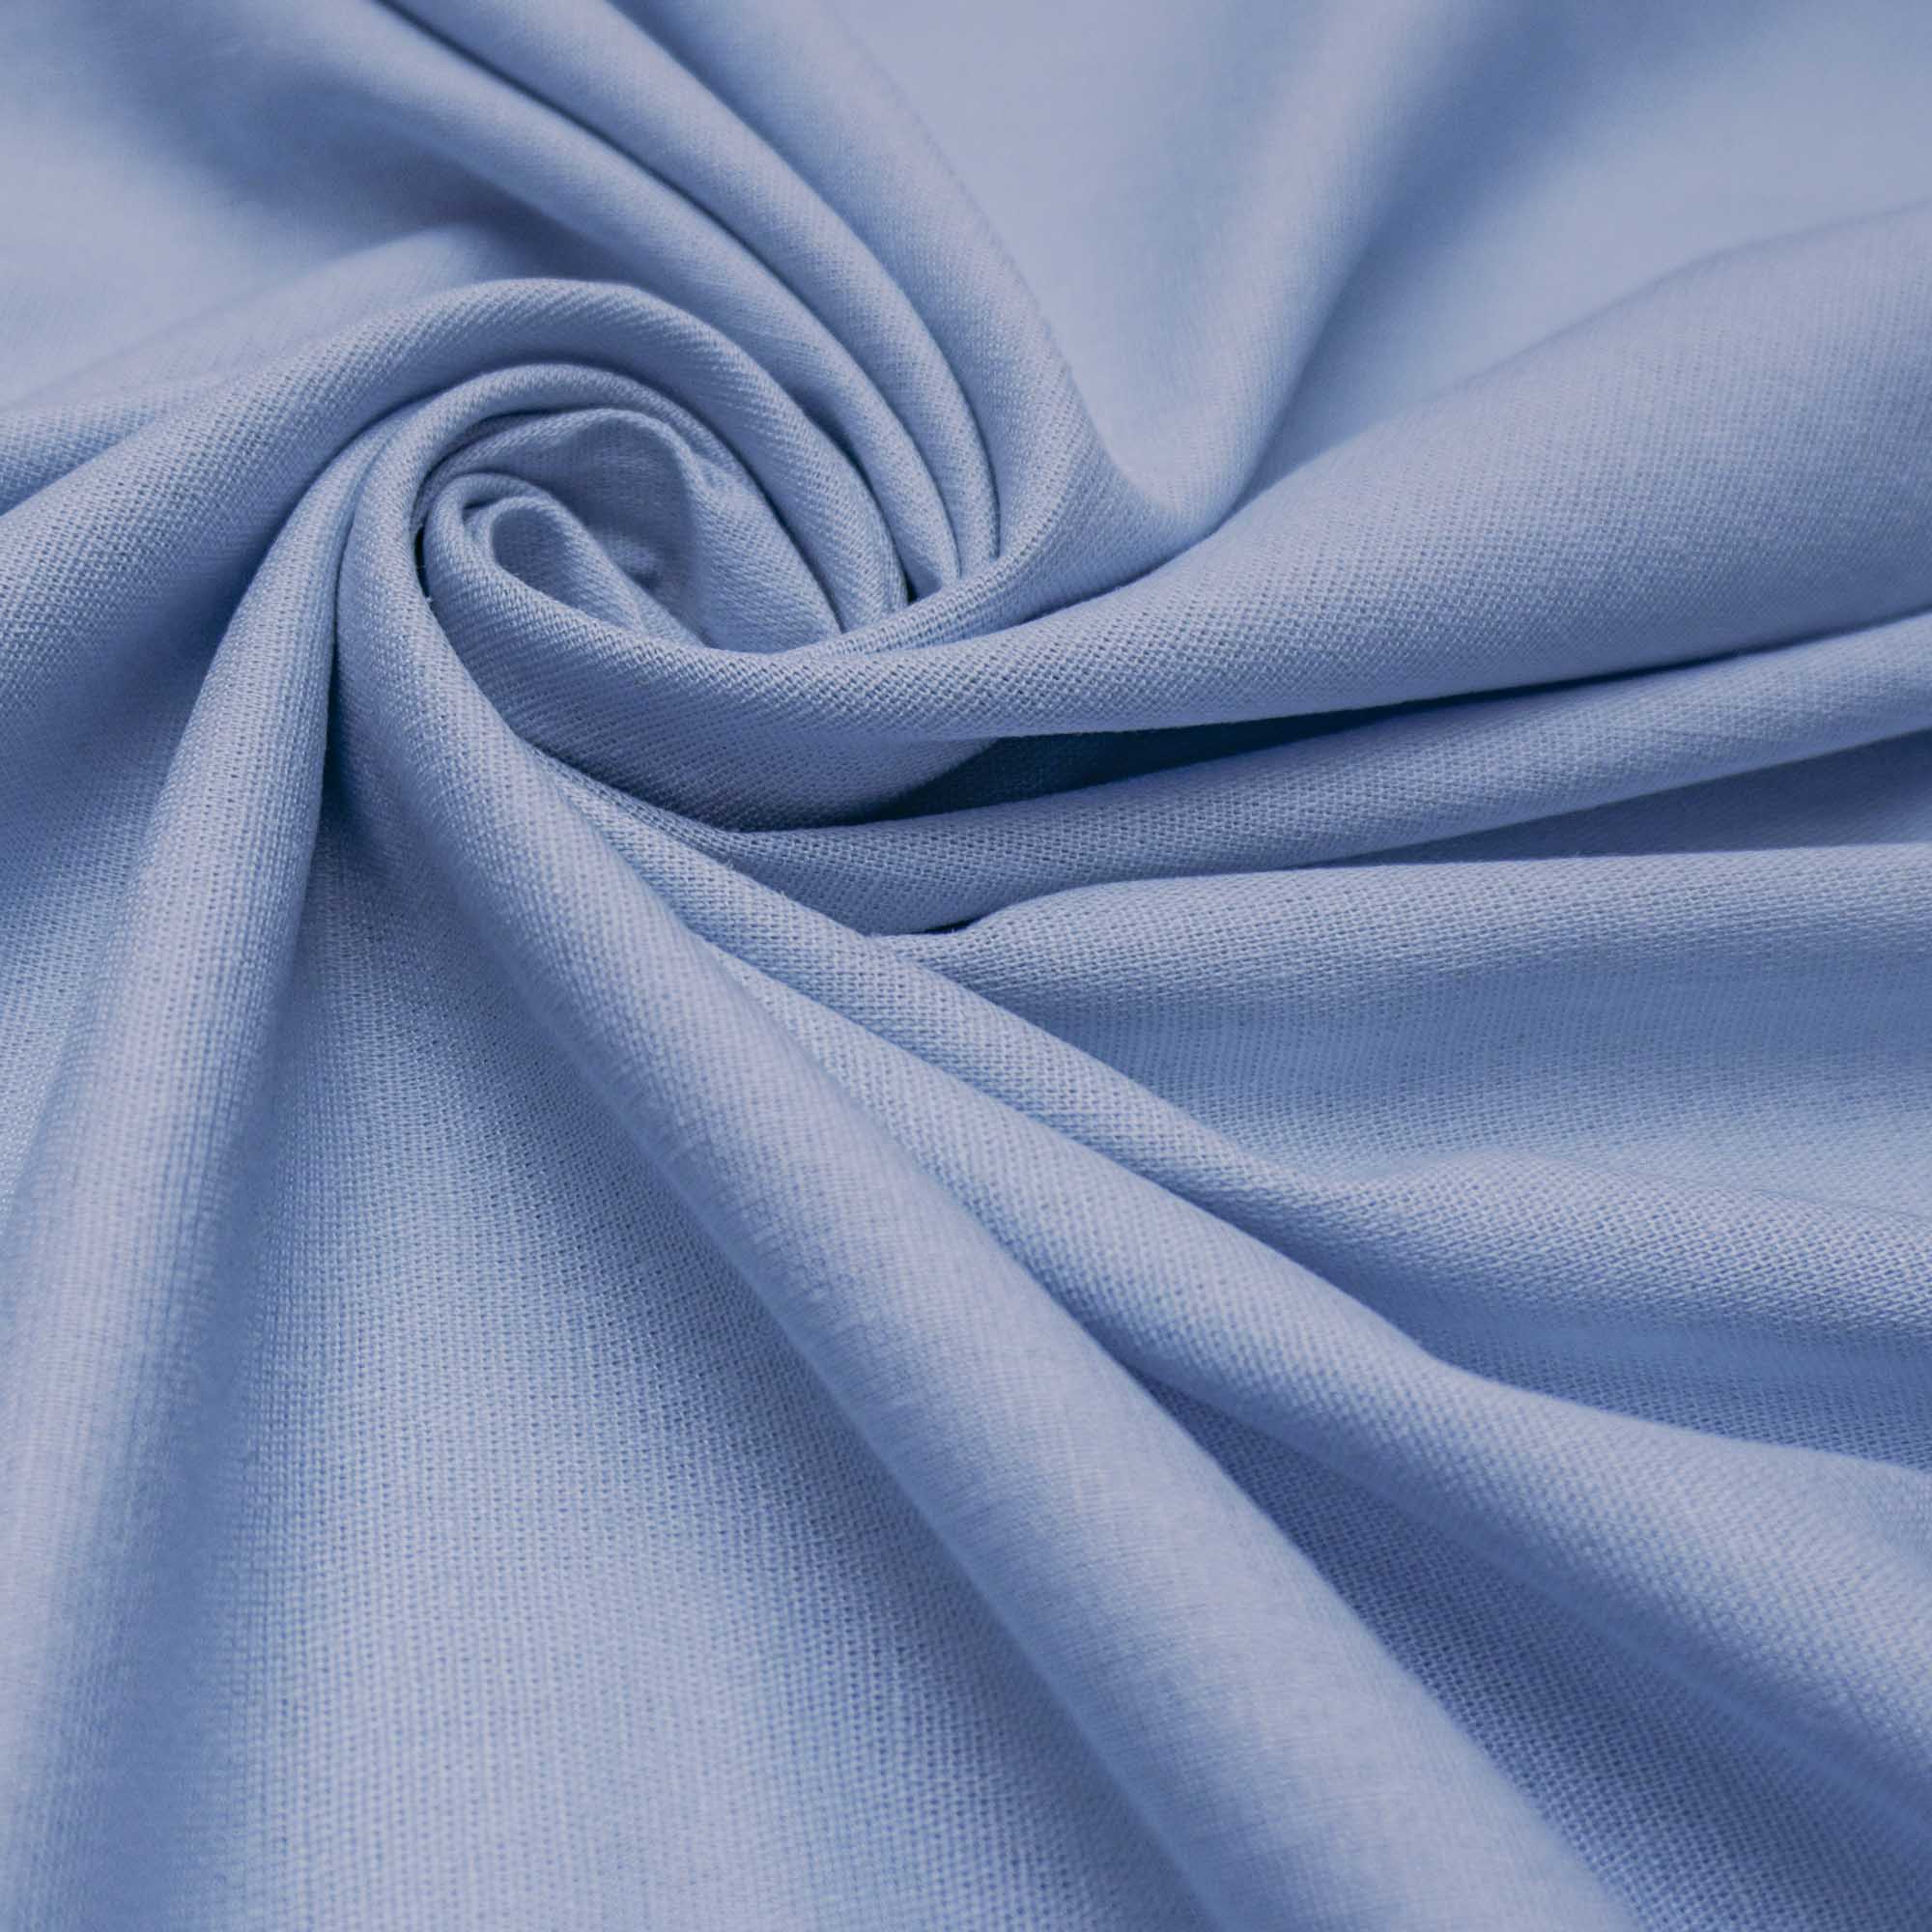 Tecido linho misto com elastano azul claro